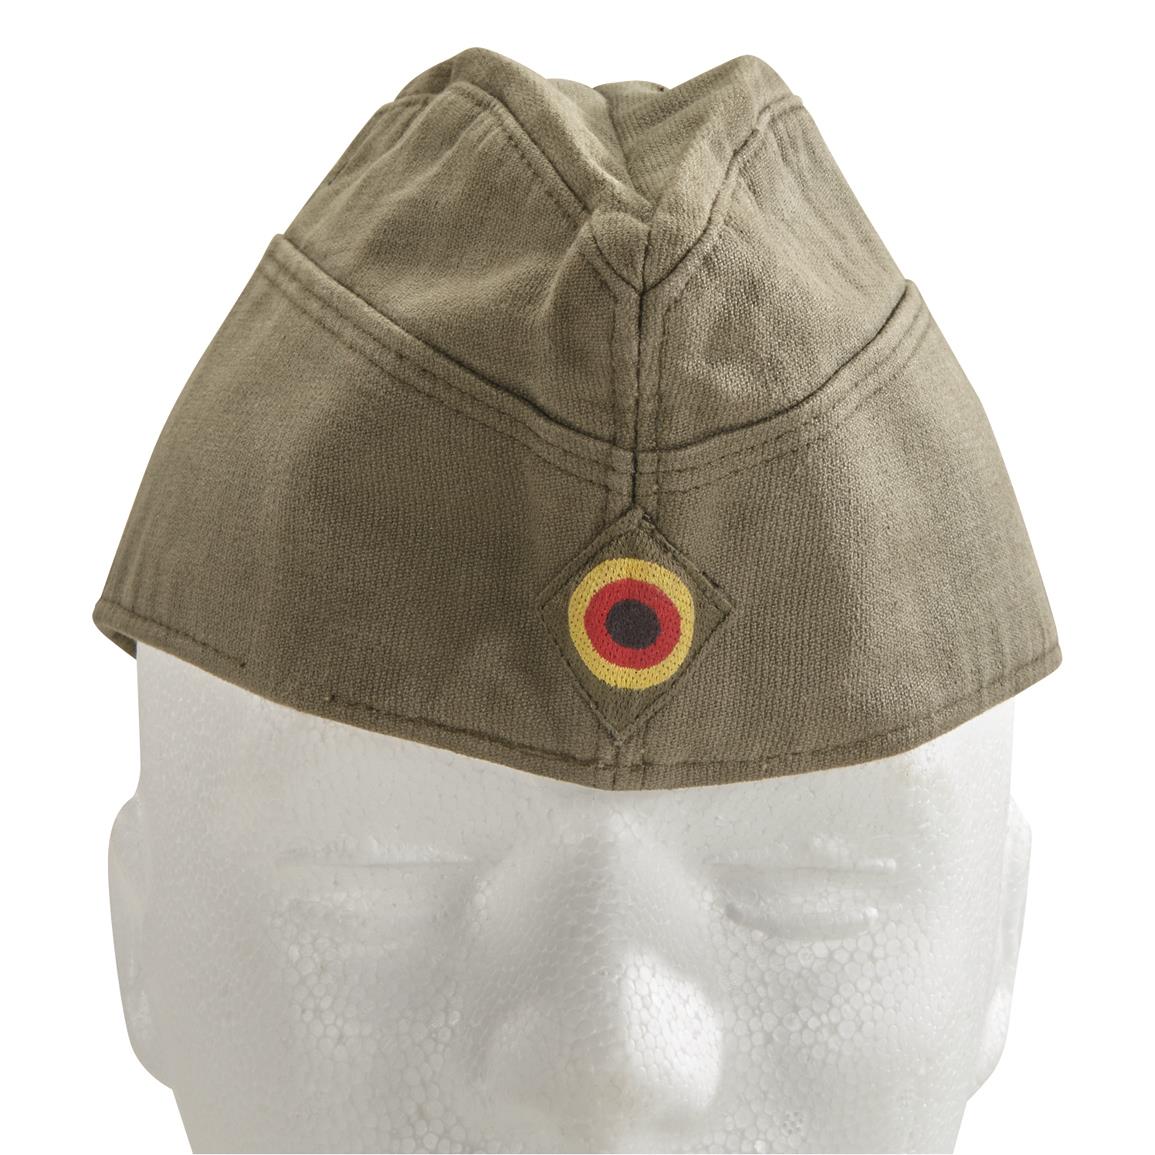 West German Military Surplus Bundeswehr Overseas Side Caps, 10 Pack, Used